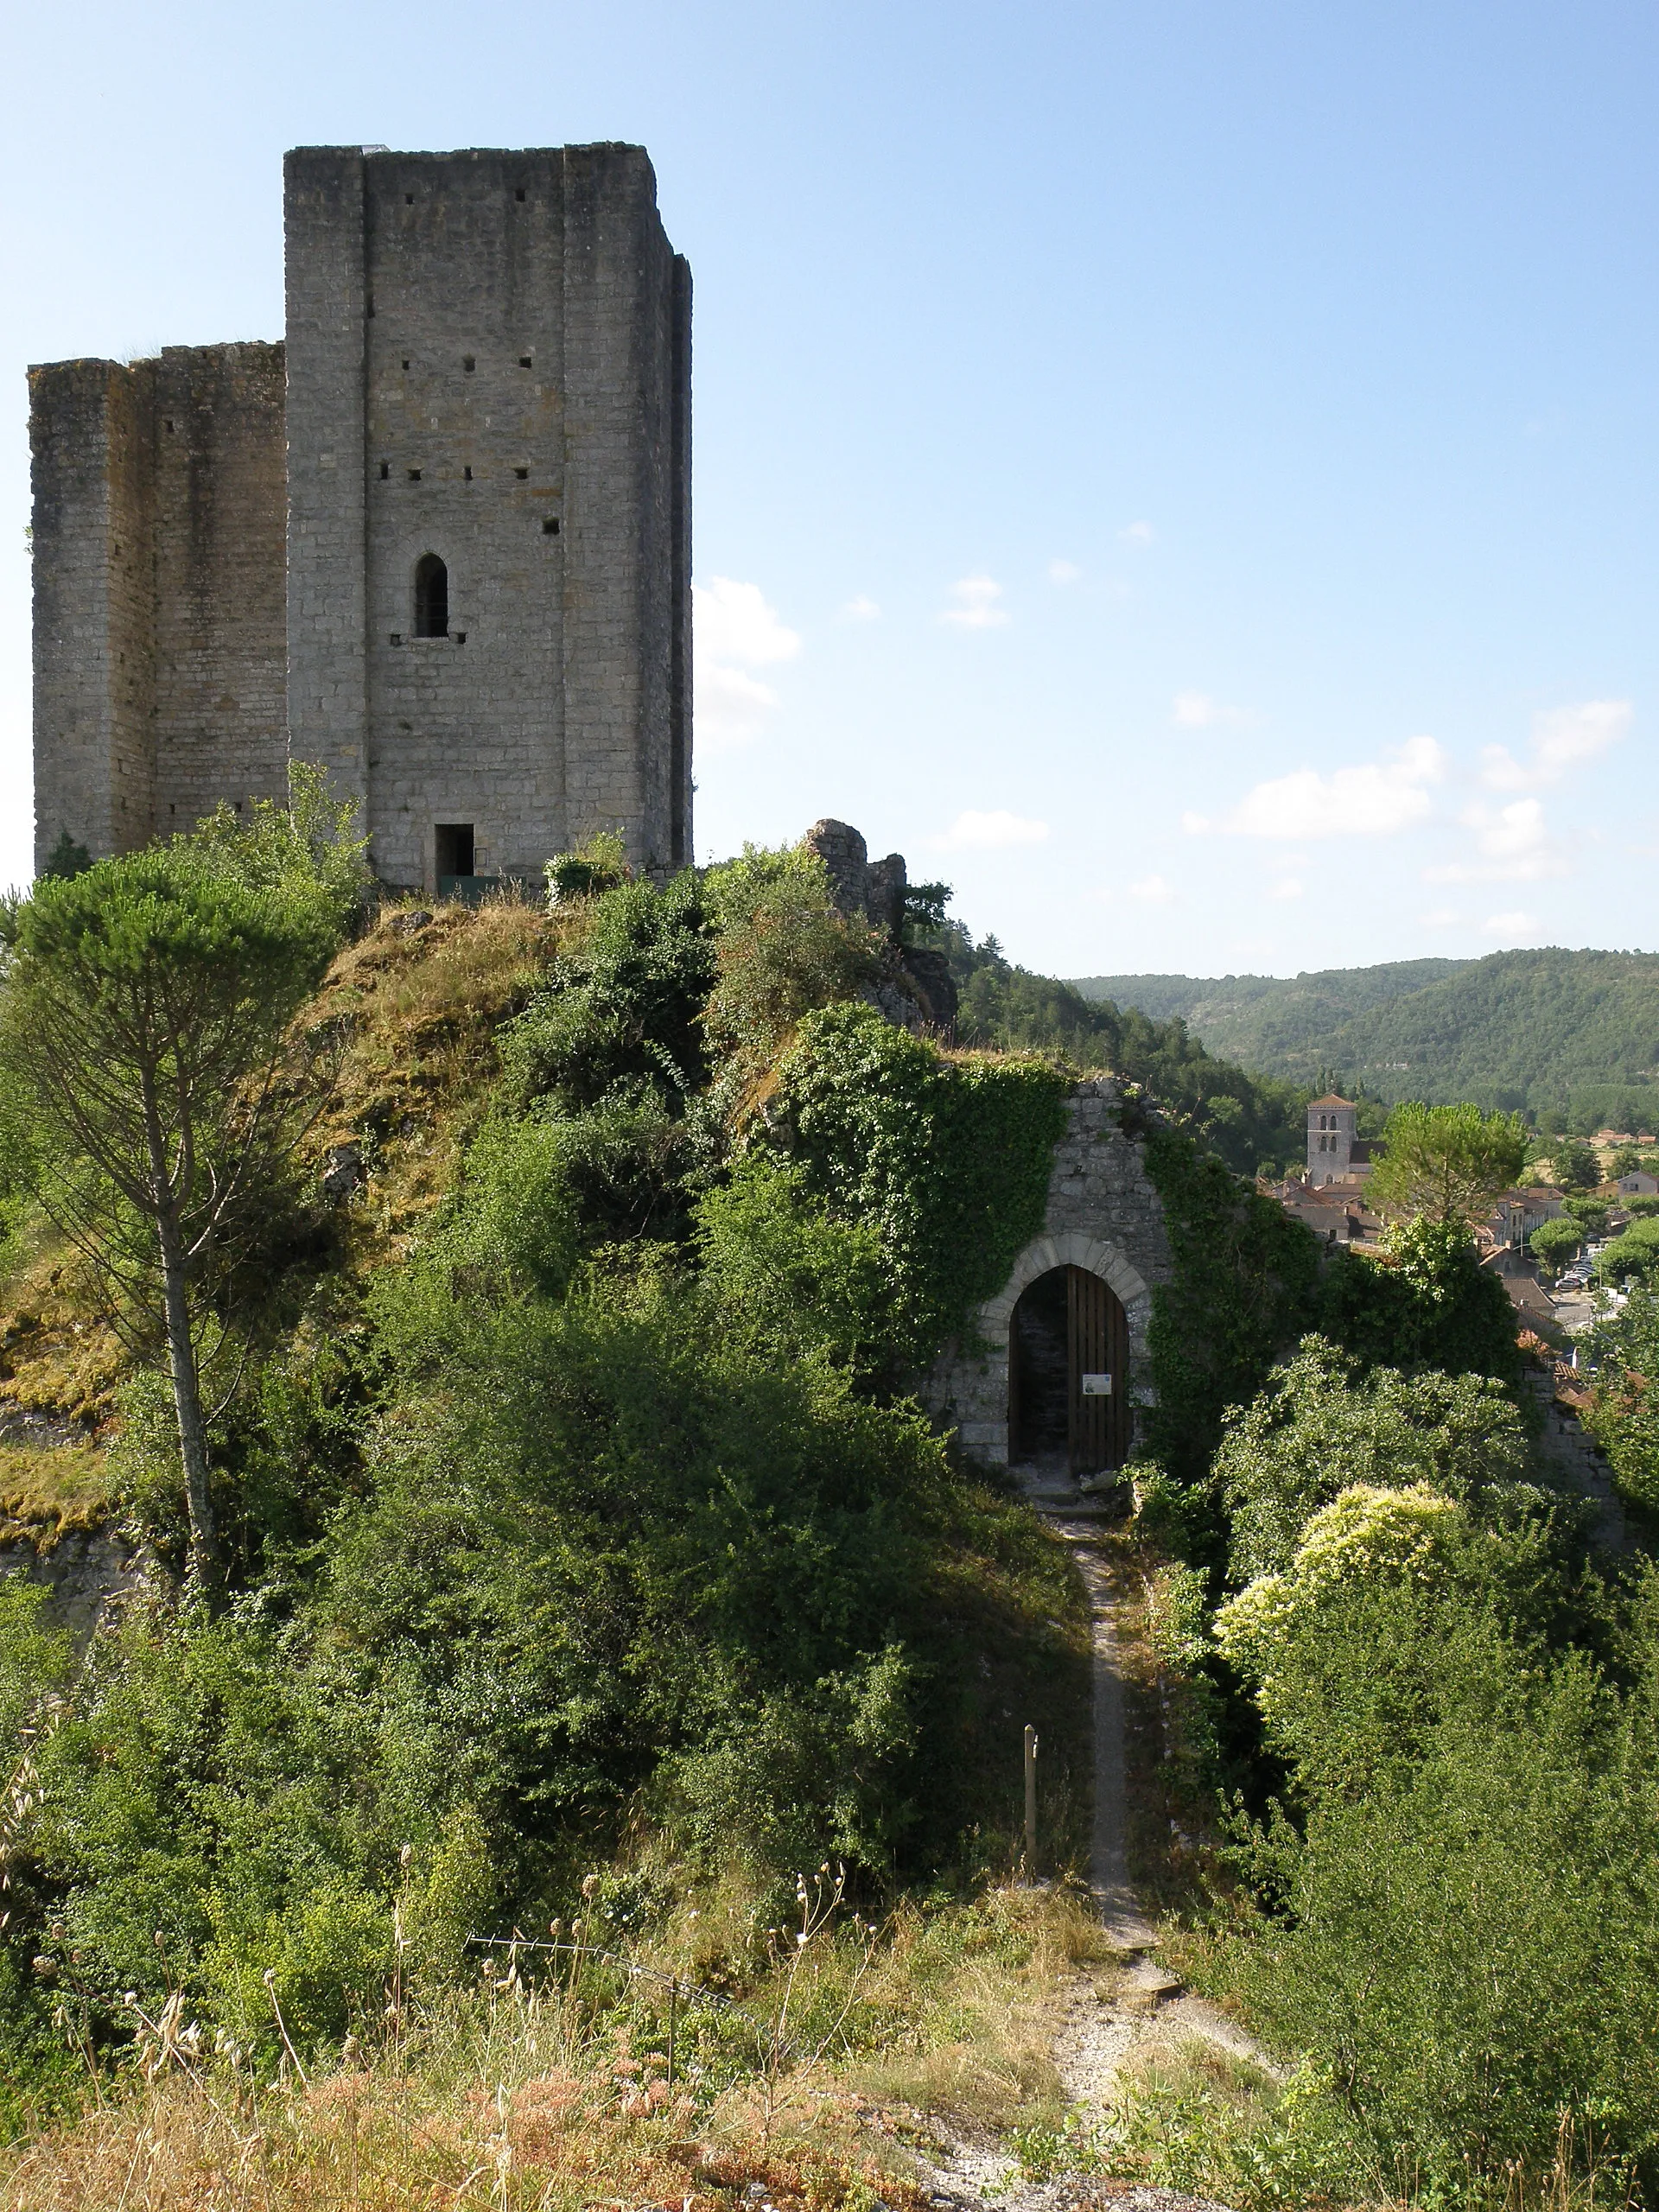 Photo showing: Luzech, ville dans le département du Lot, région Midi-Pyrénées, France.
Donjon épiscopal du XIIe siècle, haut de 24 mètres, coiffant le rocher de Saint-Projet, à l’endroit où l’isthme du cingle (=méandre) de Luzech est le plus resserré. Face nord de la tour. À l'avant-plan, chemin montant au sommet de la butte de l'Impernal, située plus au nord, derrière nous. Au fond à droite, ville de Luzech avec clocher de l'église Saint-Pierre. Coup d'œil vers le sud.